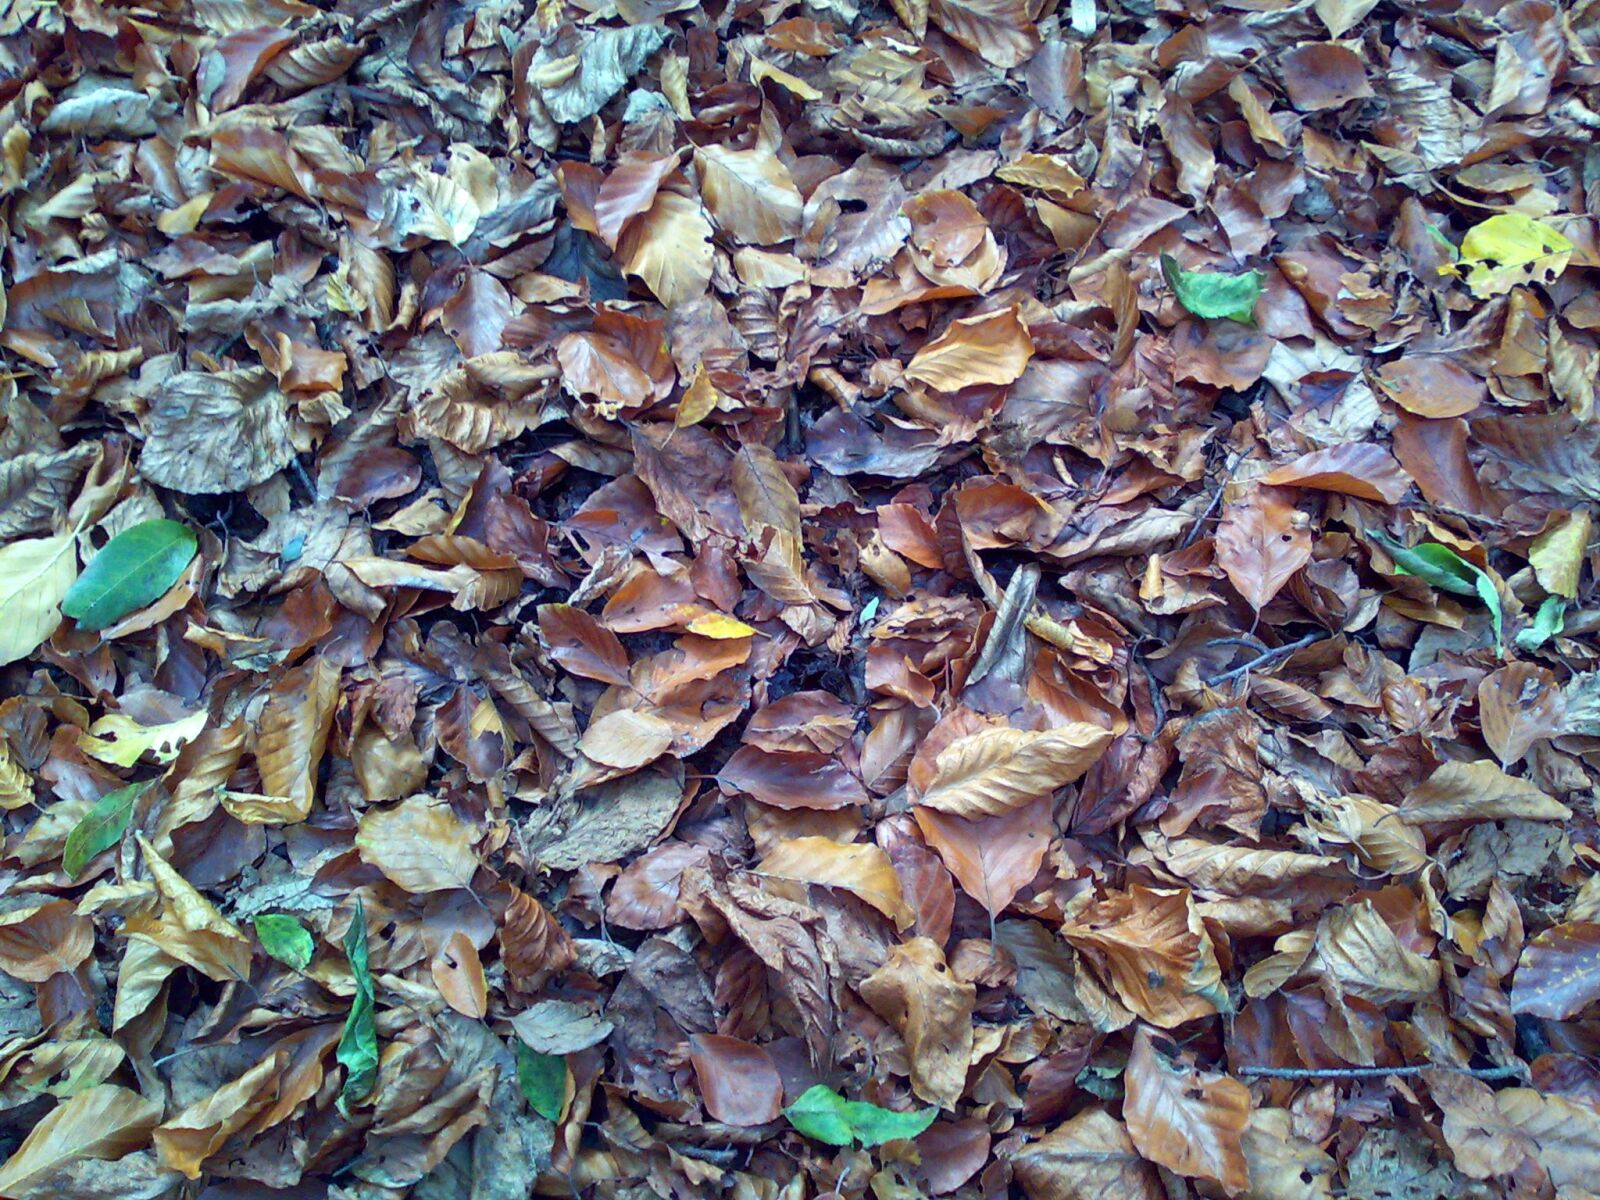 Nokia E90 sample photo. Autumn, leaves, fall, foliage photography